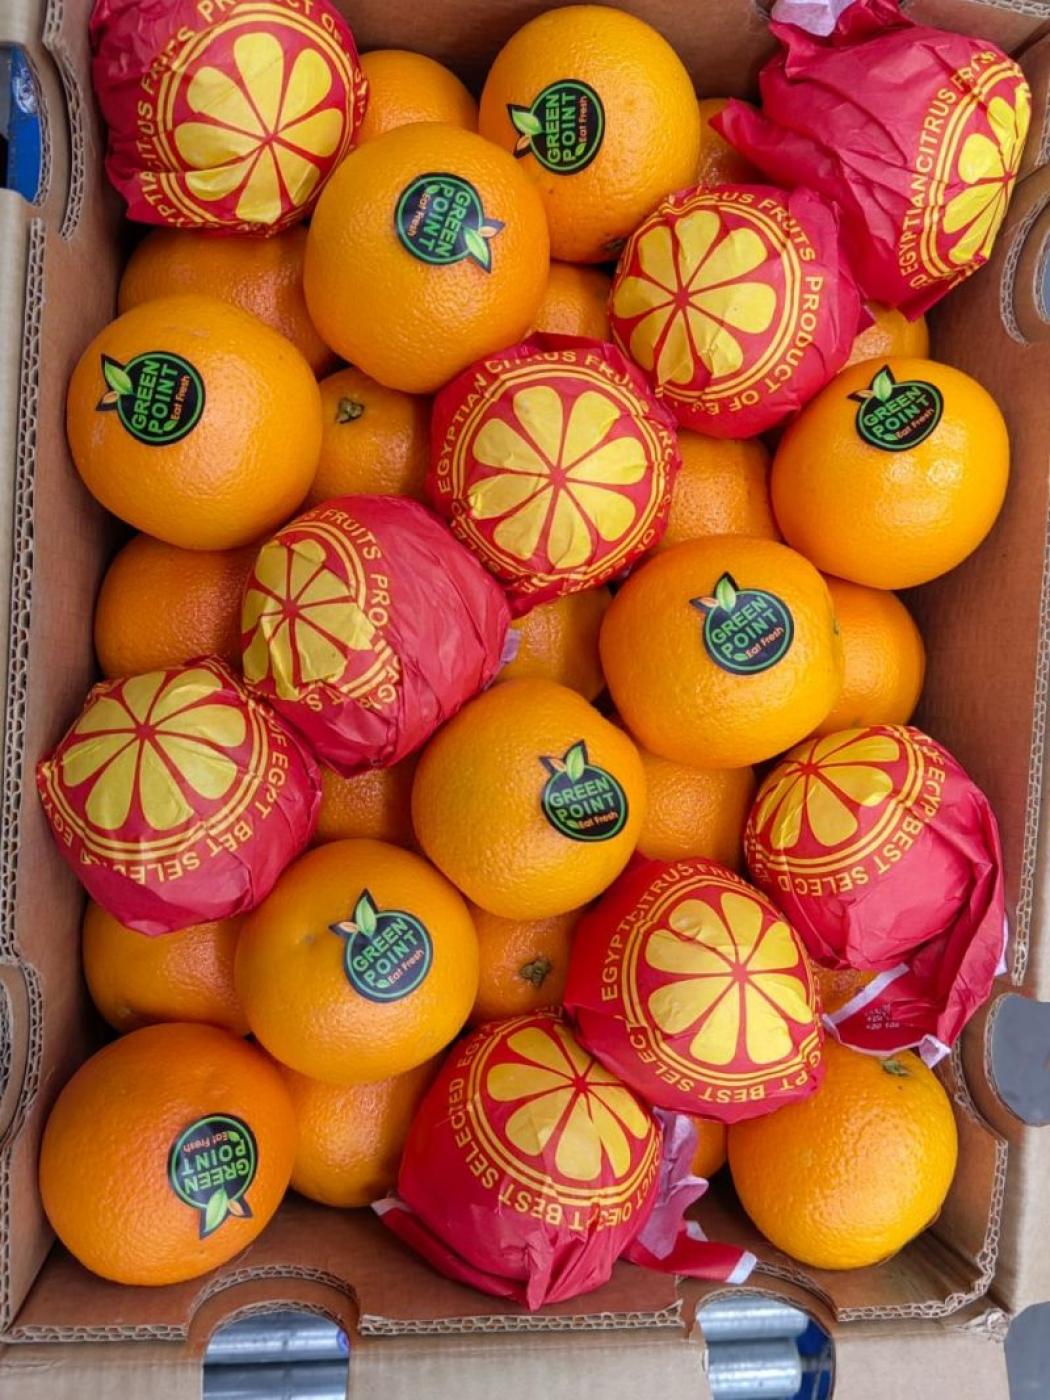 Picture for fresh Valencia orange